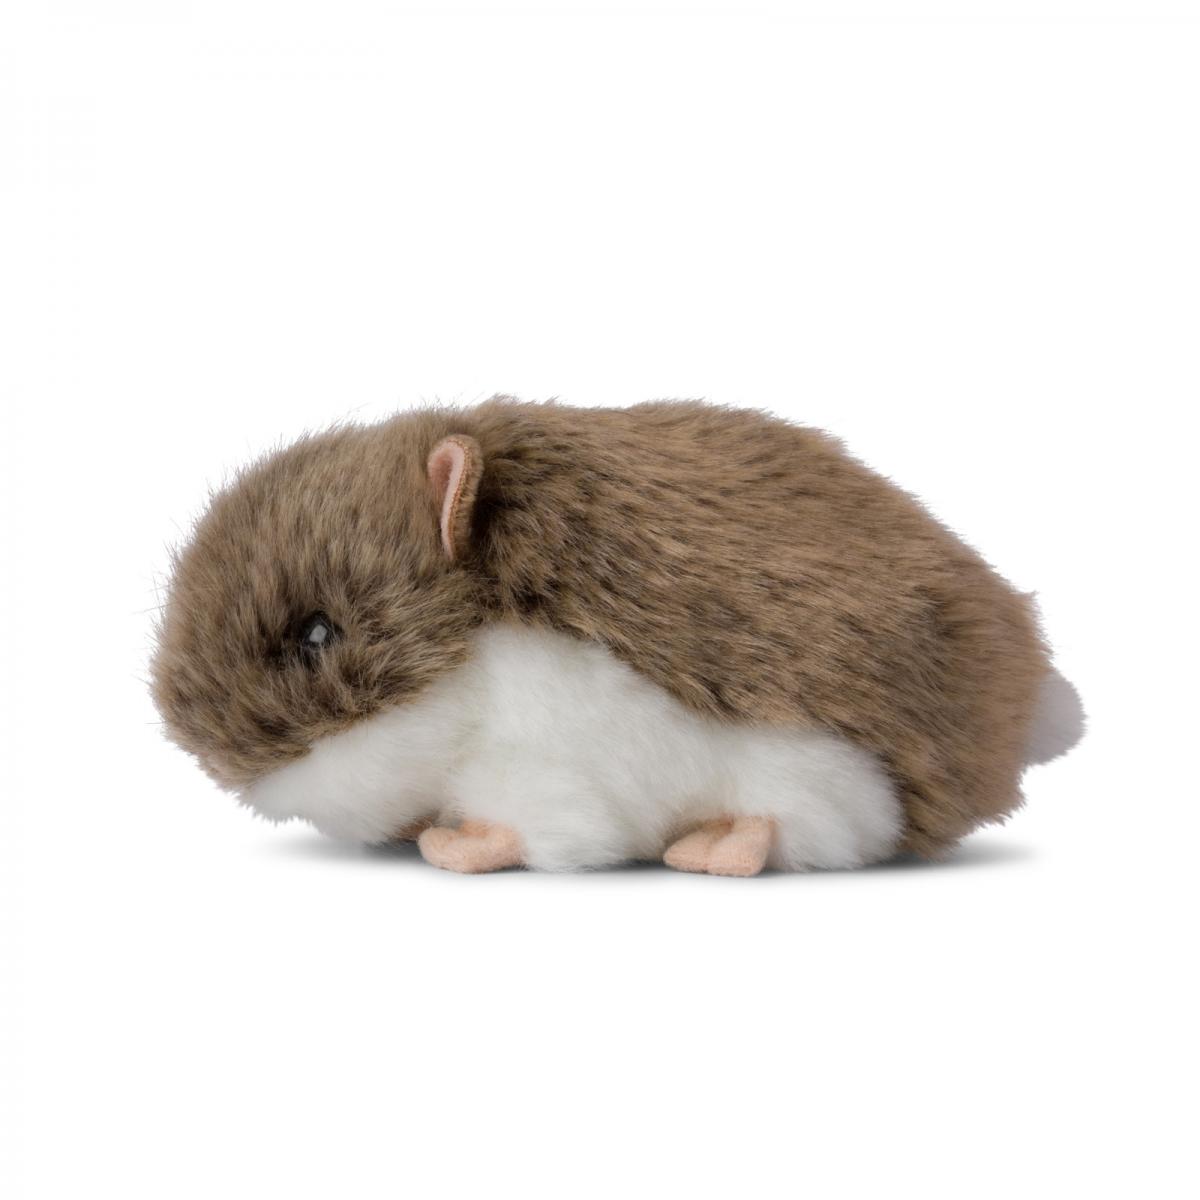 Hamster - WWF (Vrldsnaturfonden)